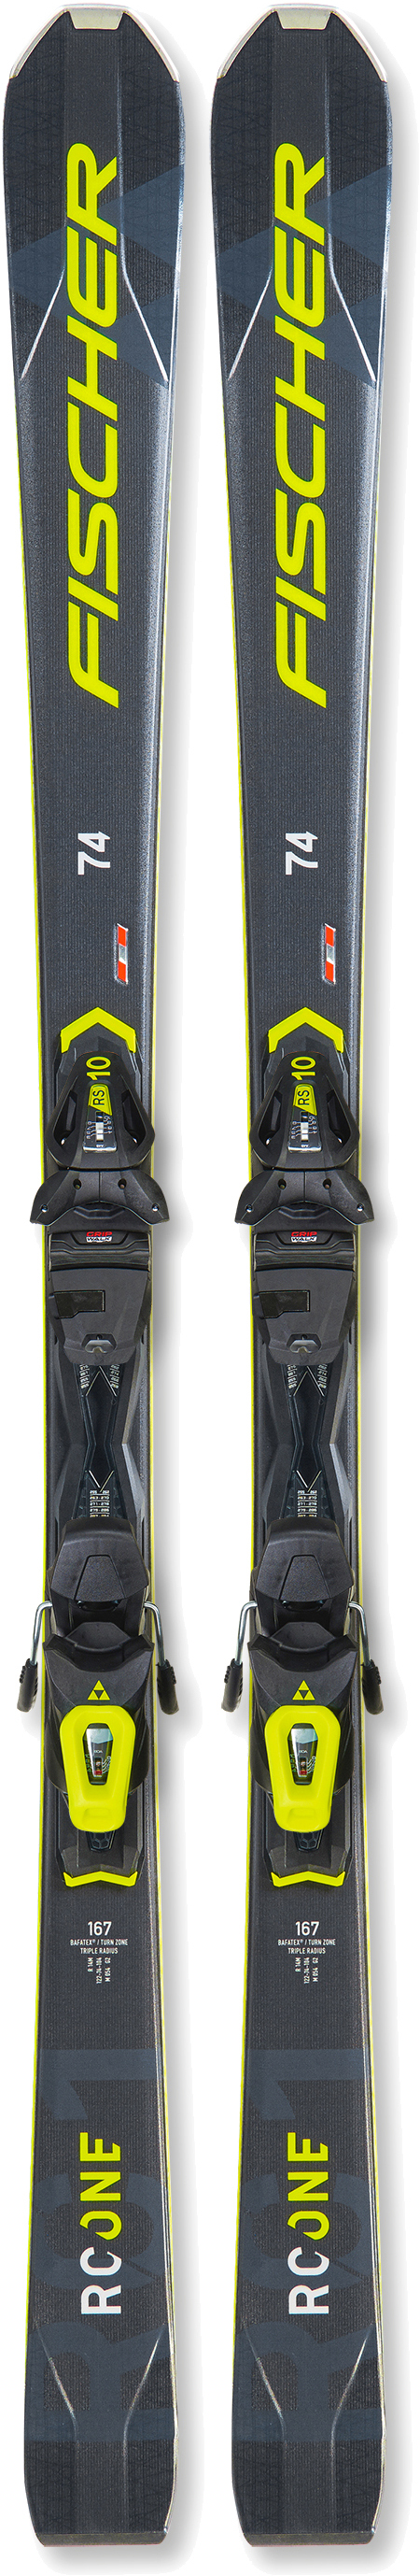 Лыжи для подготовленного склона Fischer RC ONE 74 AR + RS 10 PR T40821 153 см